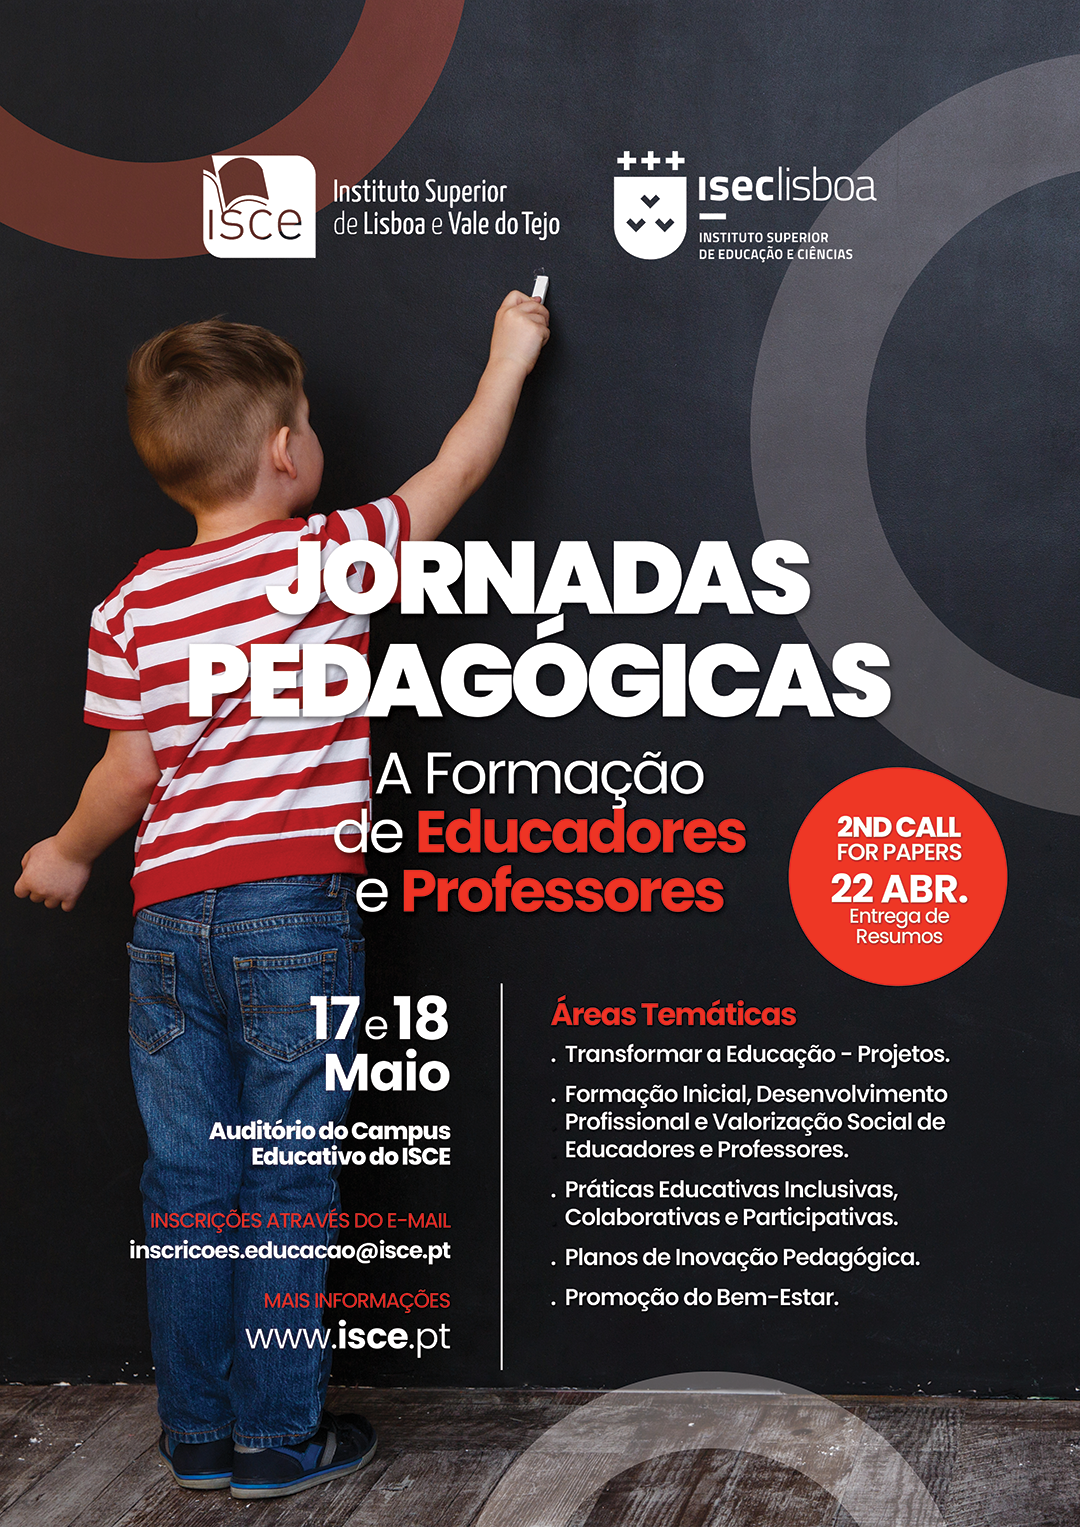 ISCE e ISEC Lisboa organizam Jornadas Pedagógicas “A Formação de Educadores e Professores”